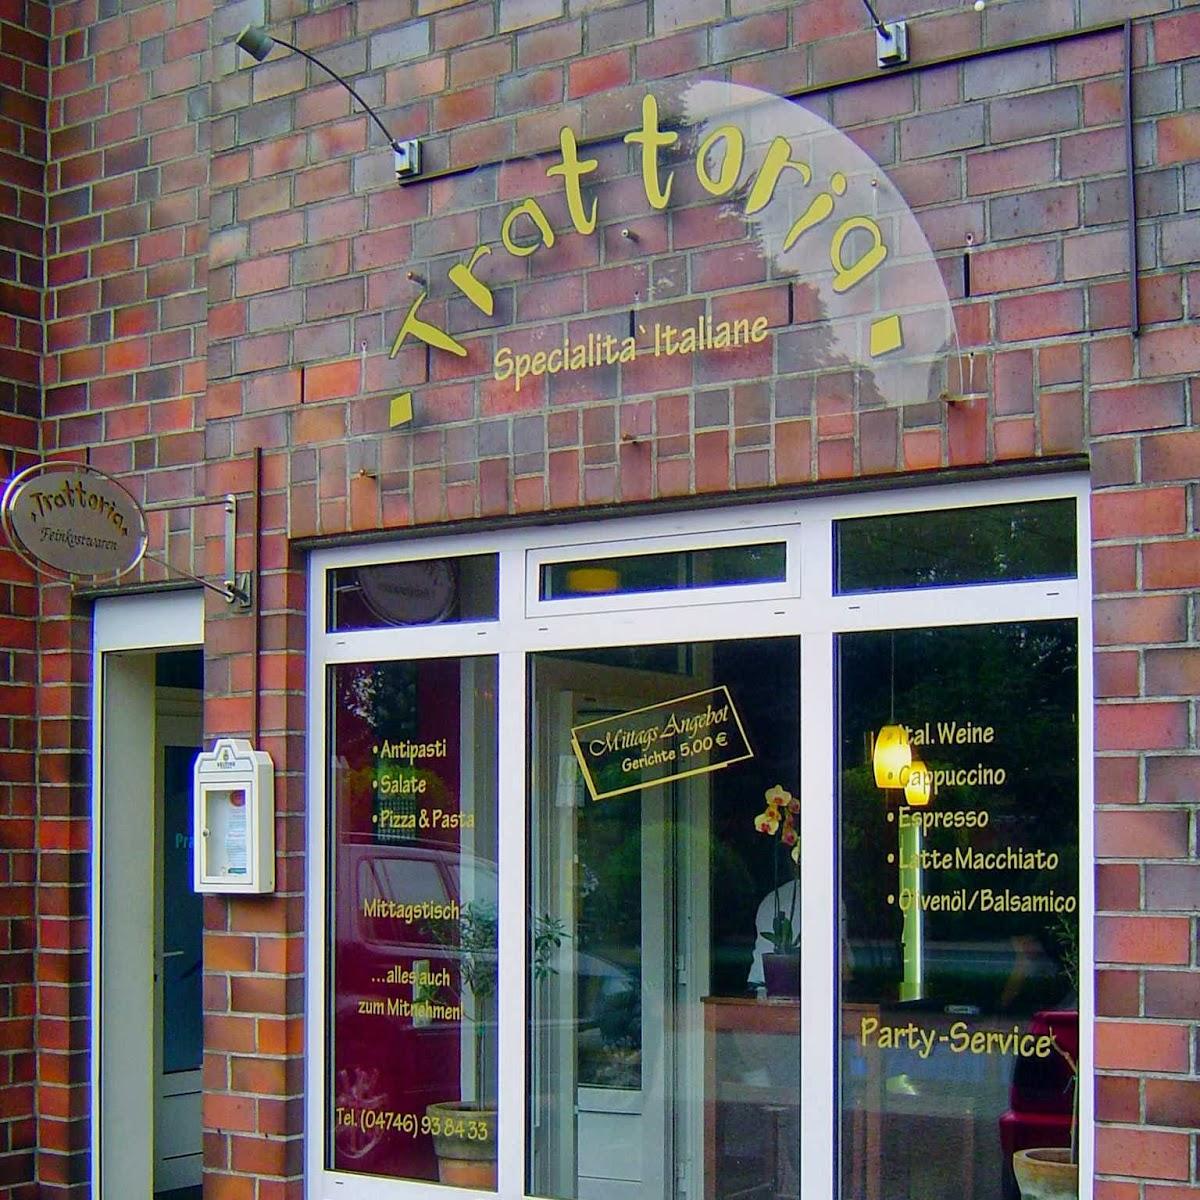 Restaurant "Trattoria" in Hagen im Bremischen